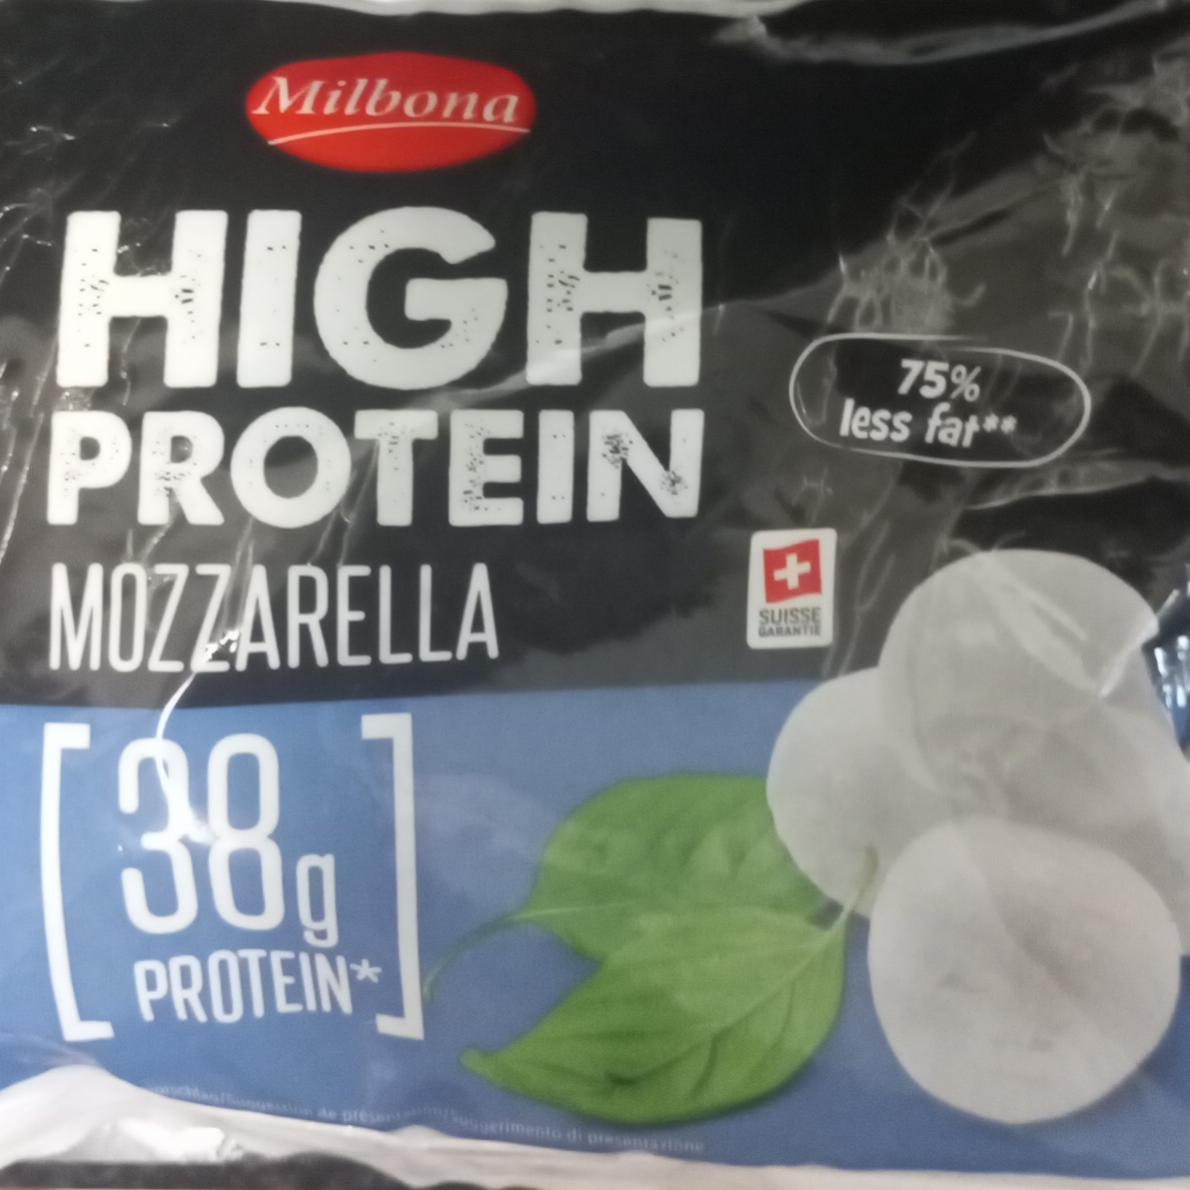 Fotografie - High protein mozzarella Milbona